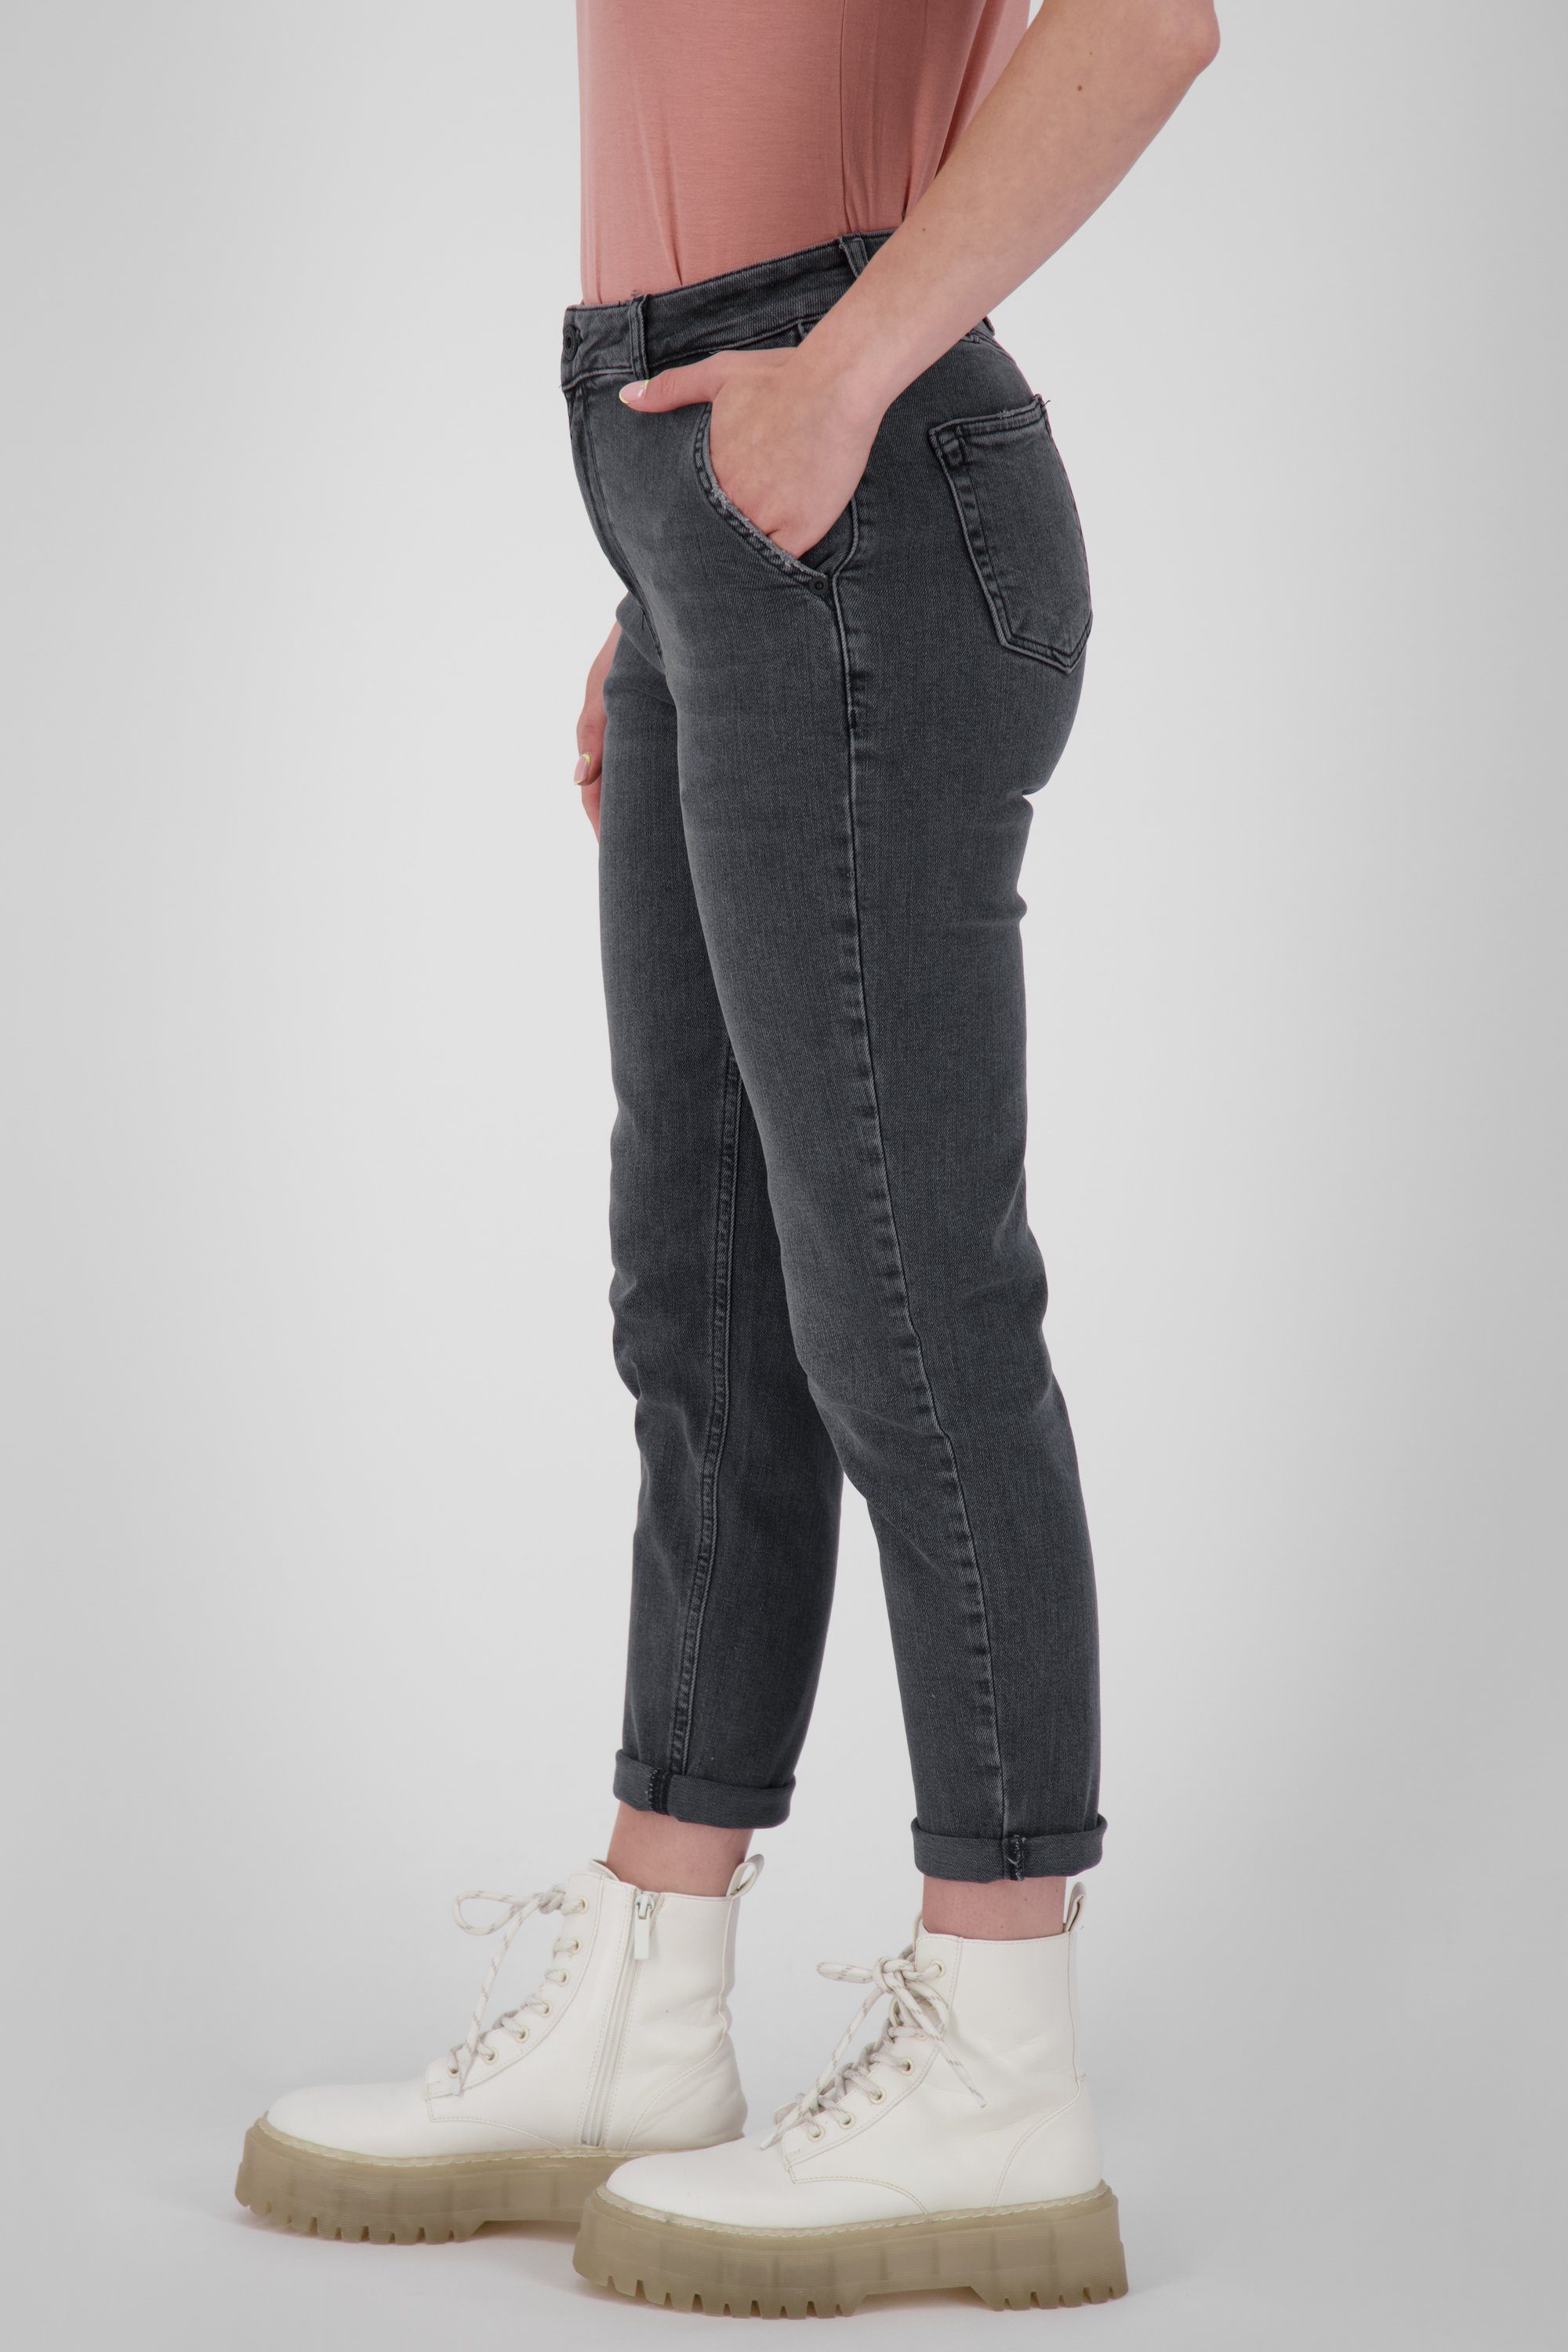 Damen Pants Kickin LaureenAK Alife DNM Q & Mom-Jeans Jeanshose